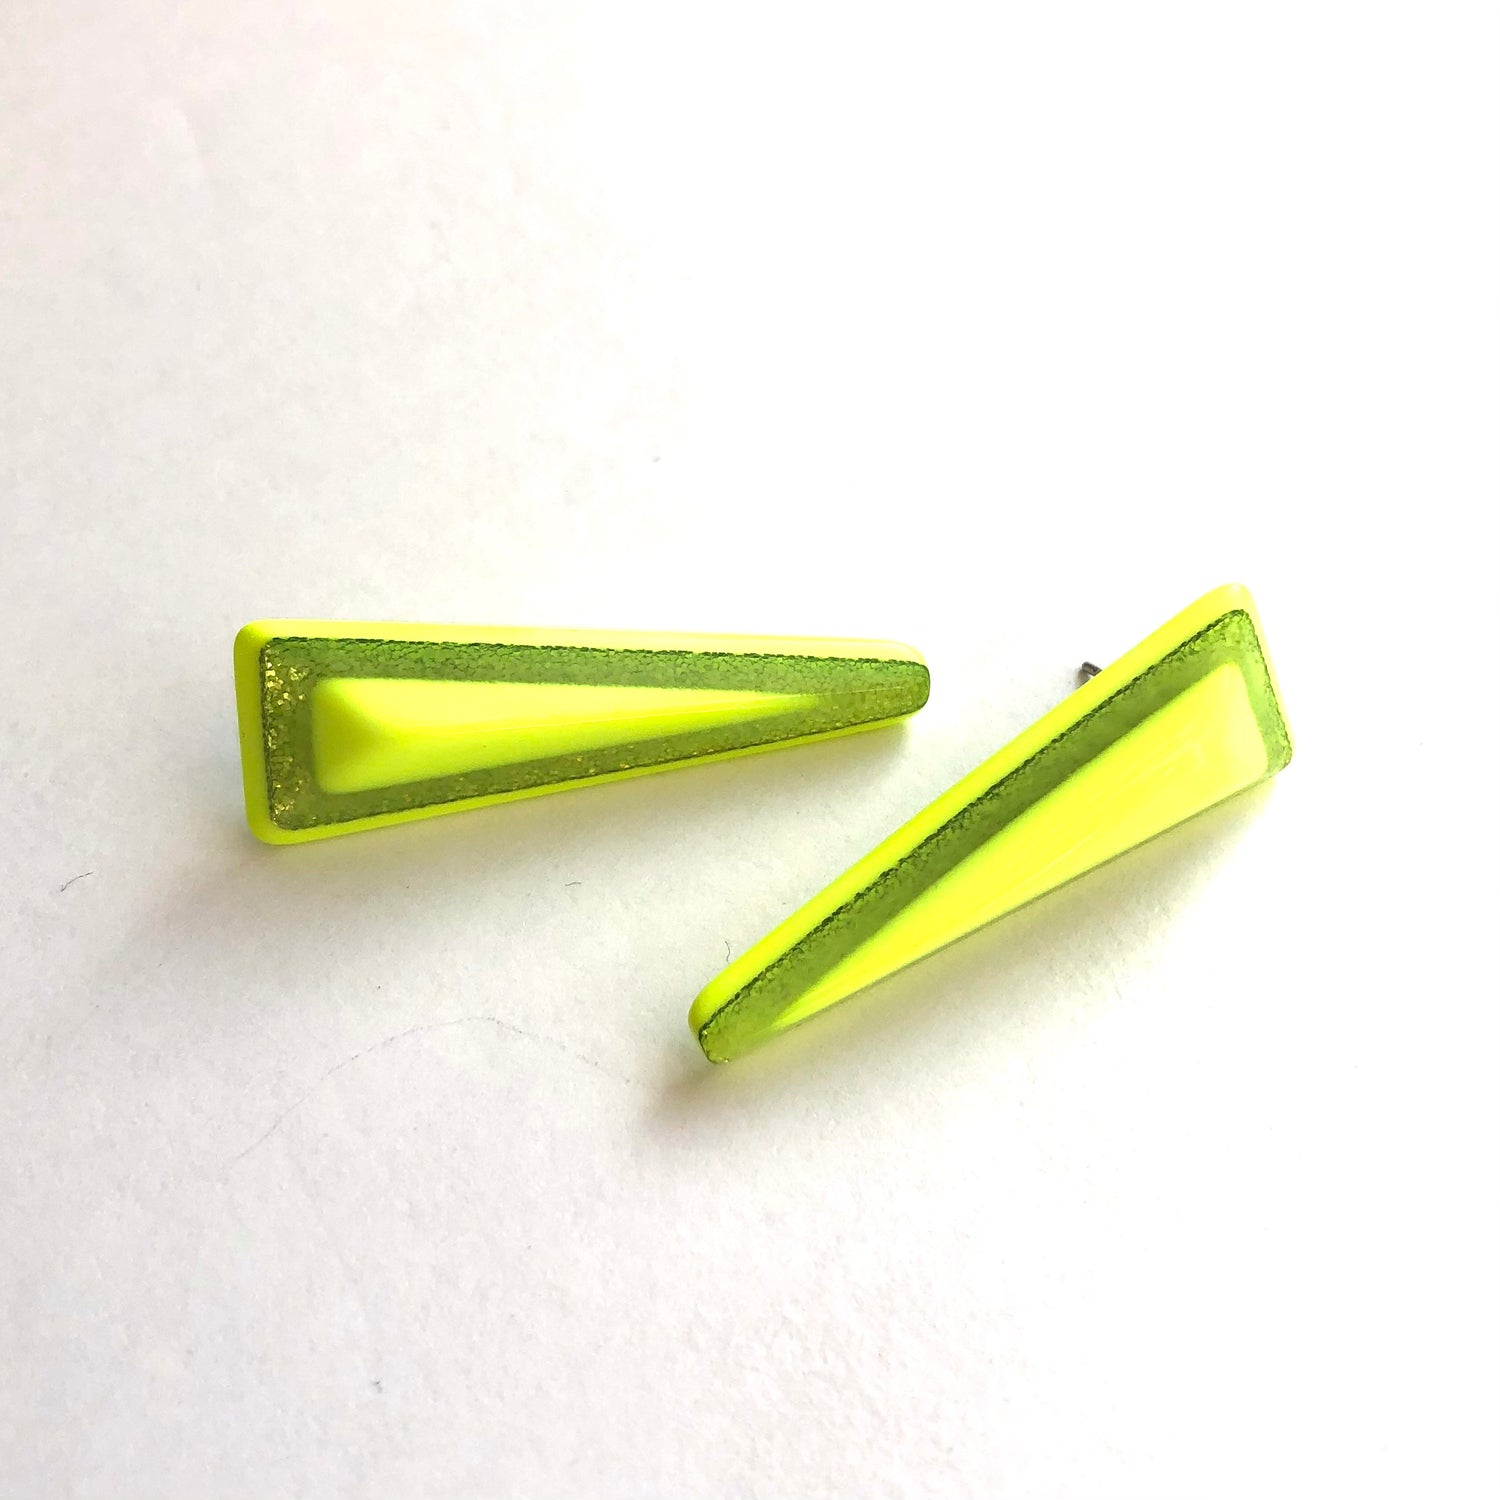 neon yellow earrings